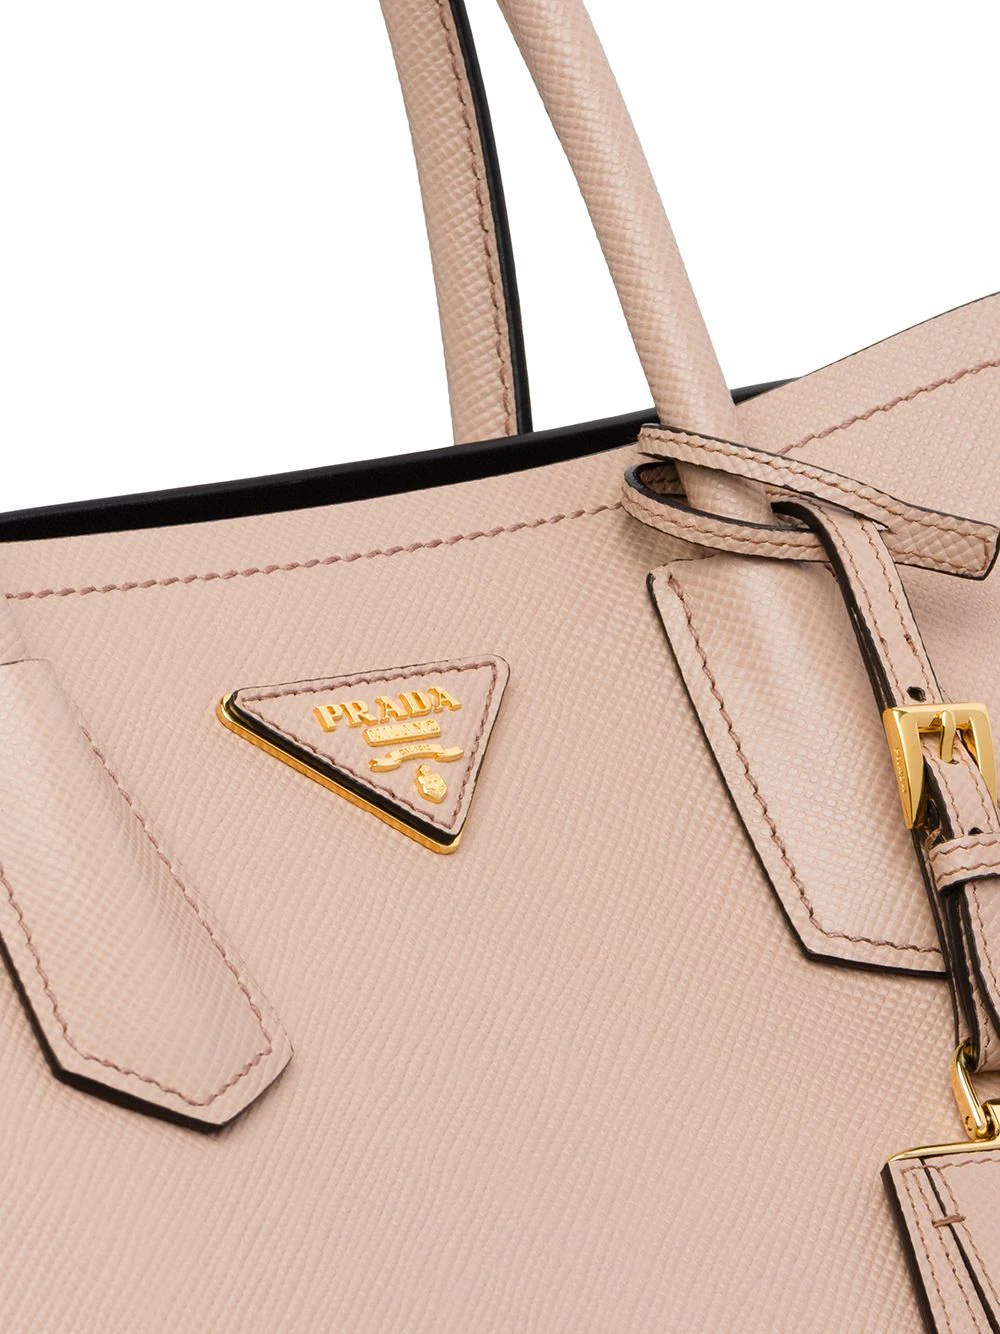 Prada hand bag real vs fake review. How to spot counterfeit Prada Saffiano  bags and purses 